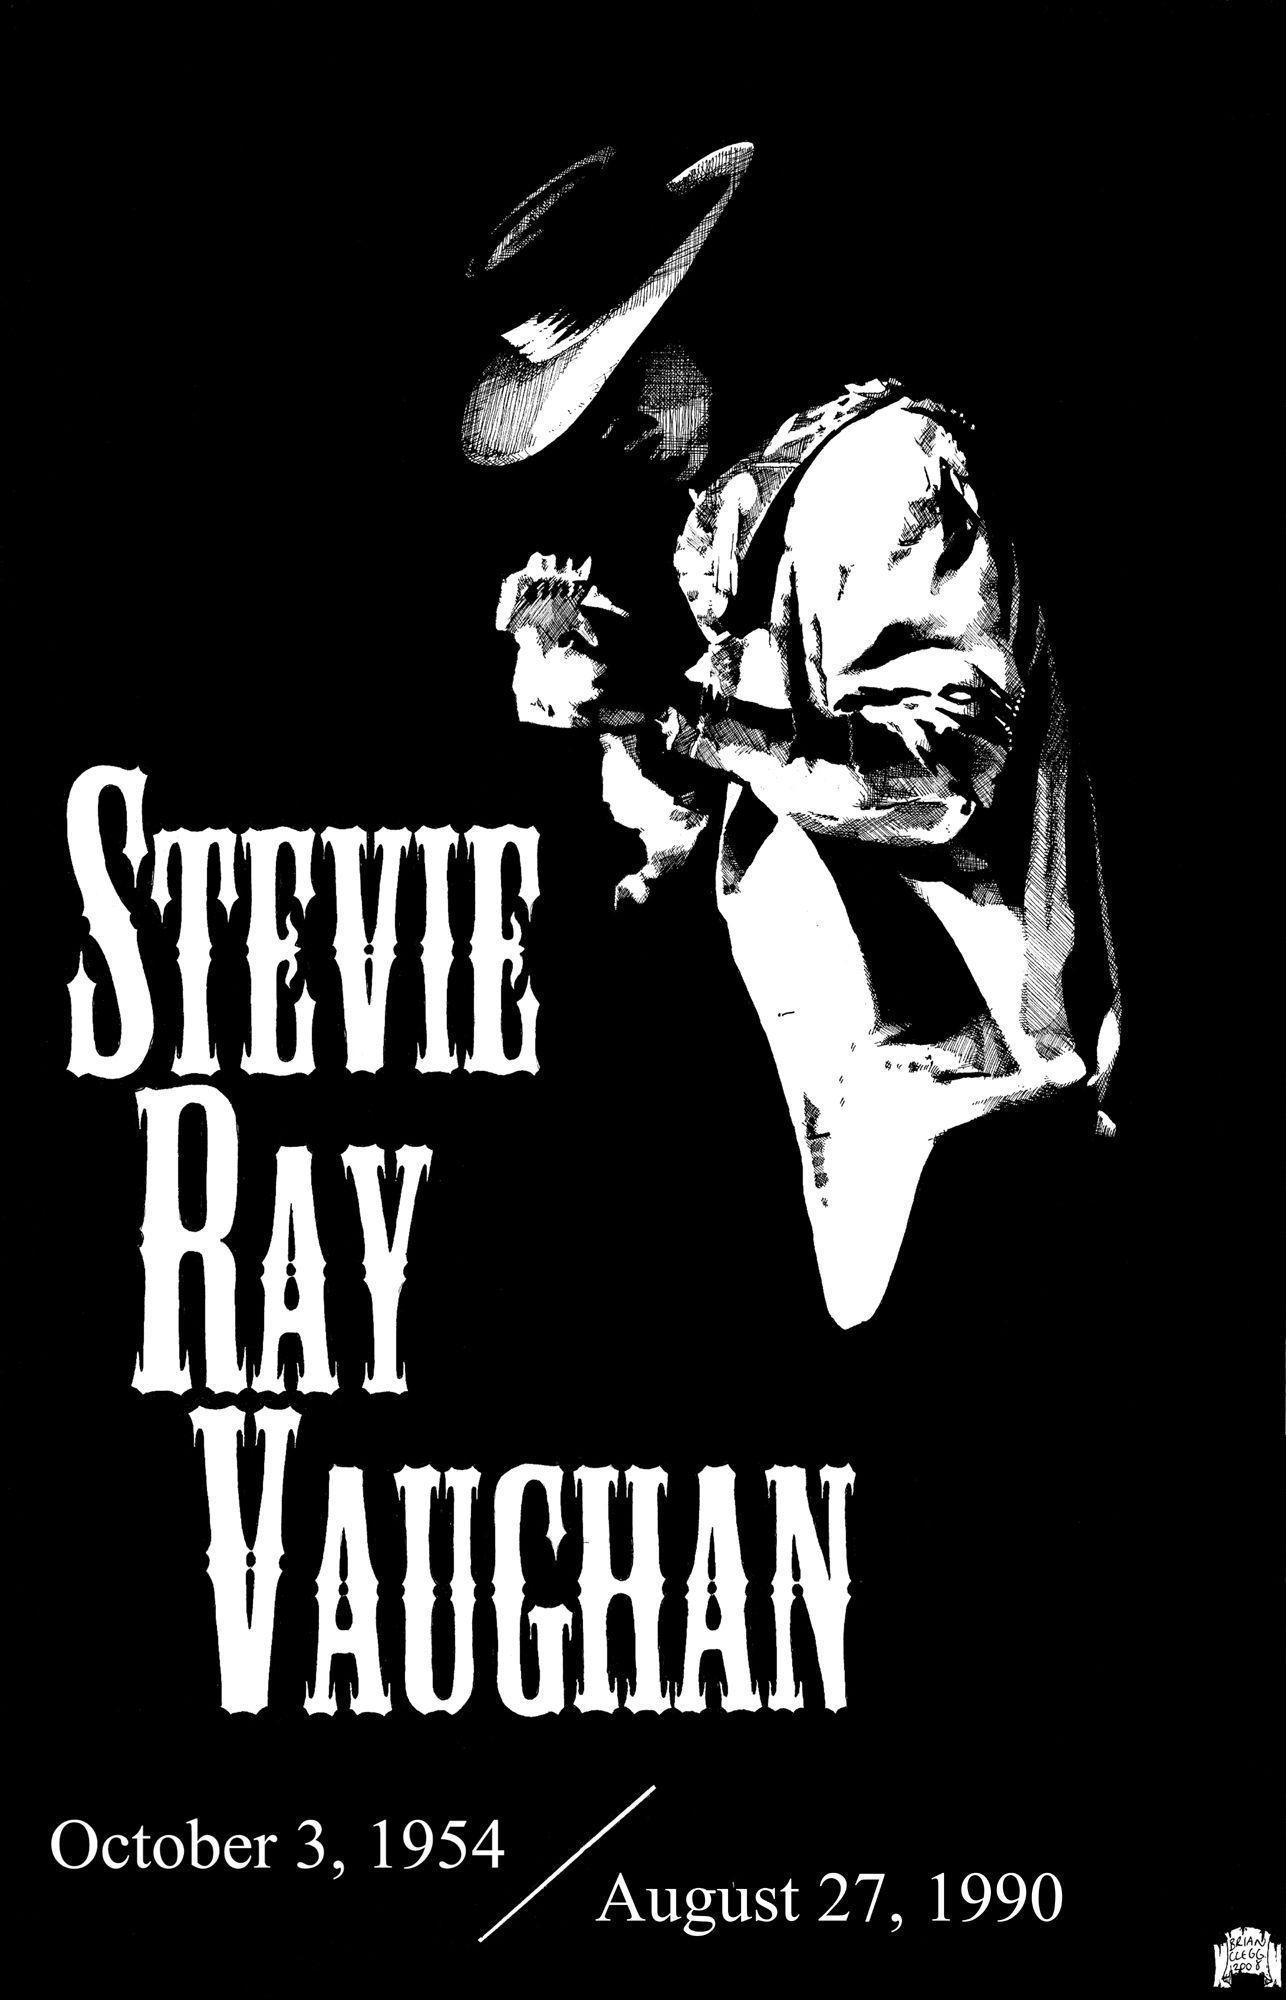 Wallpaper For > Stevie Ray Vaughan Wallpaper